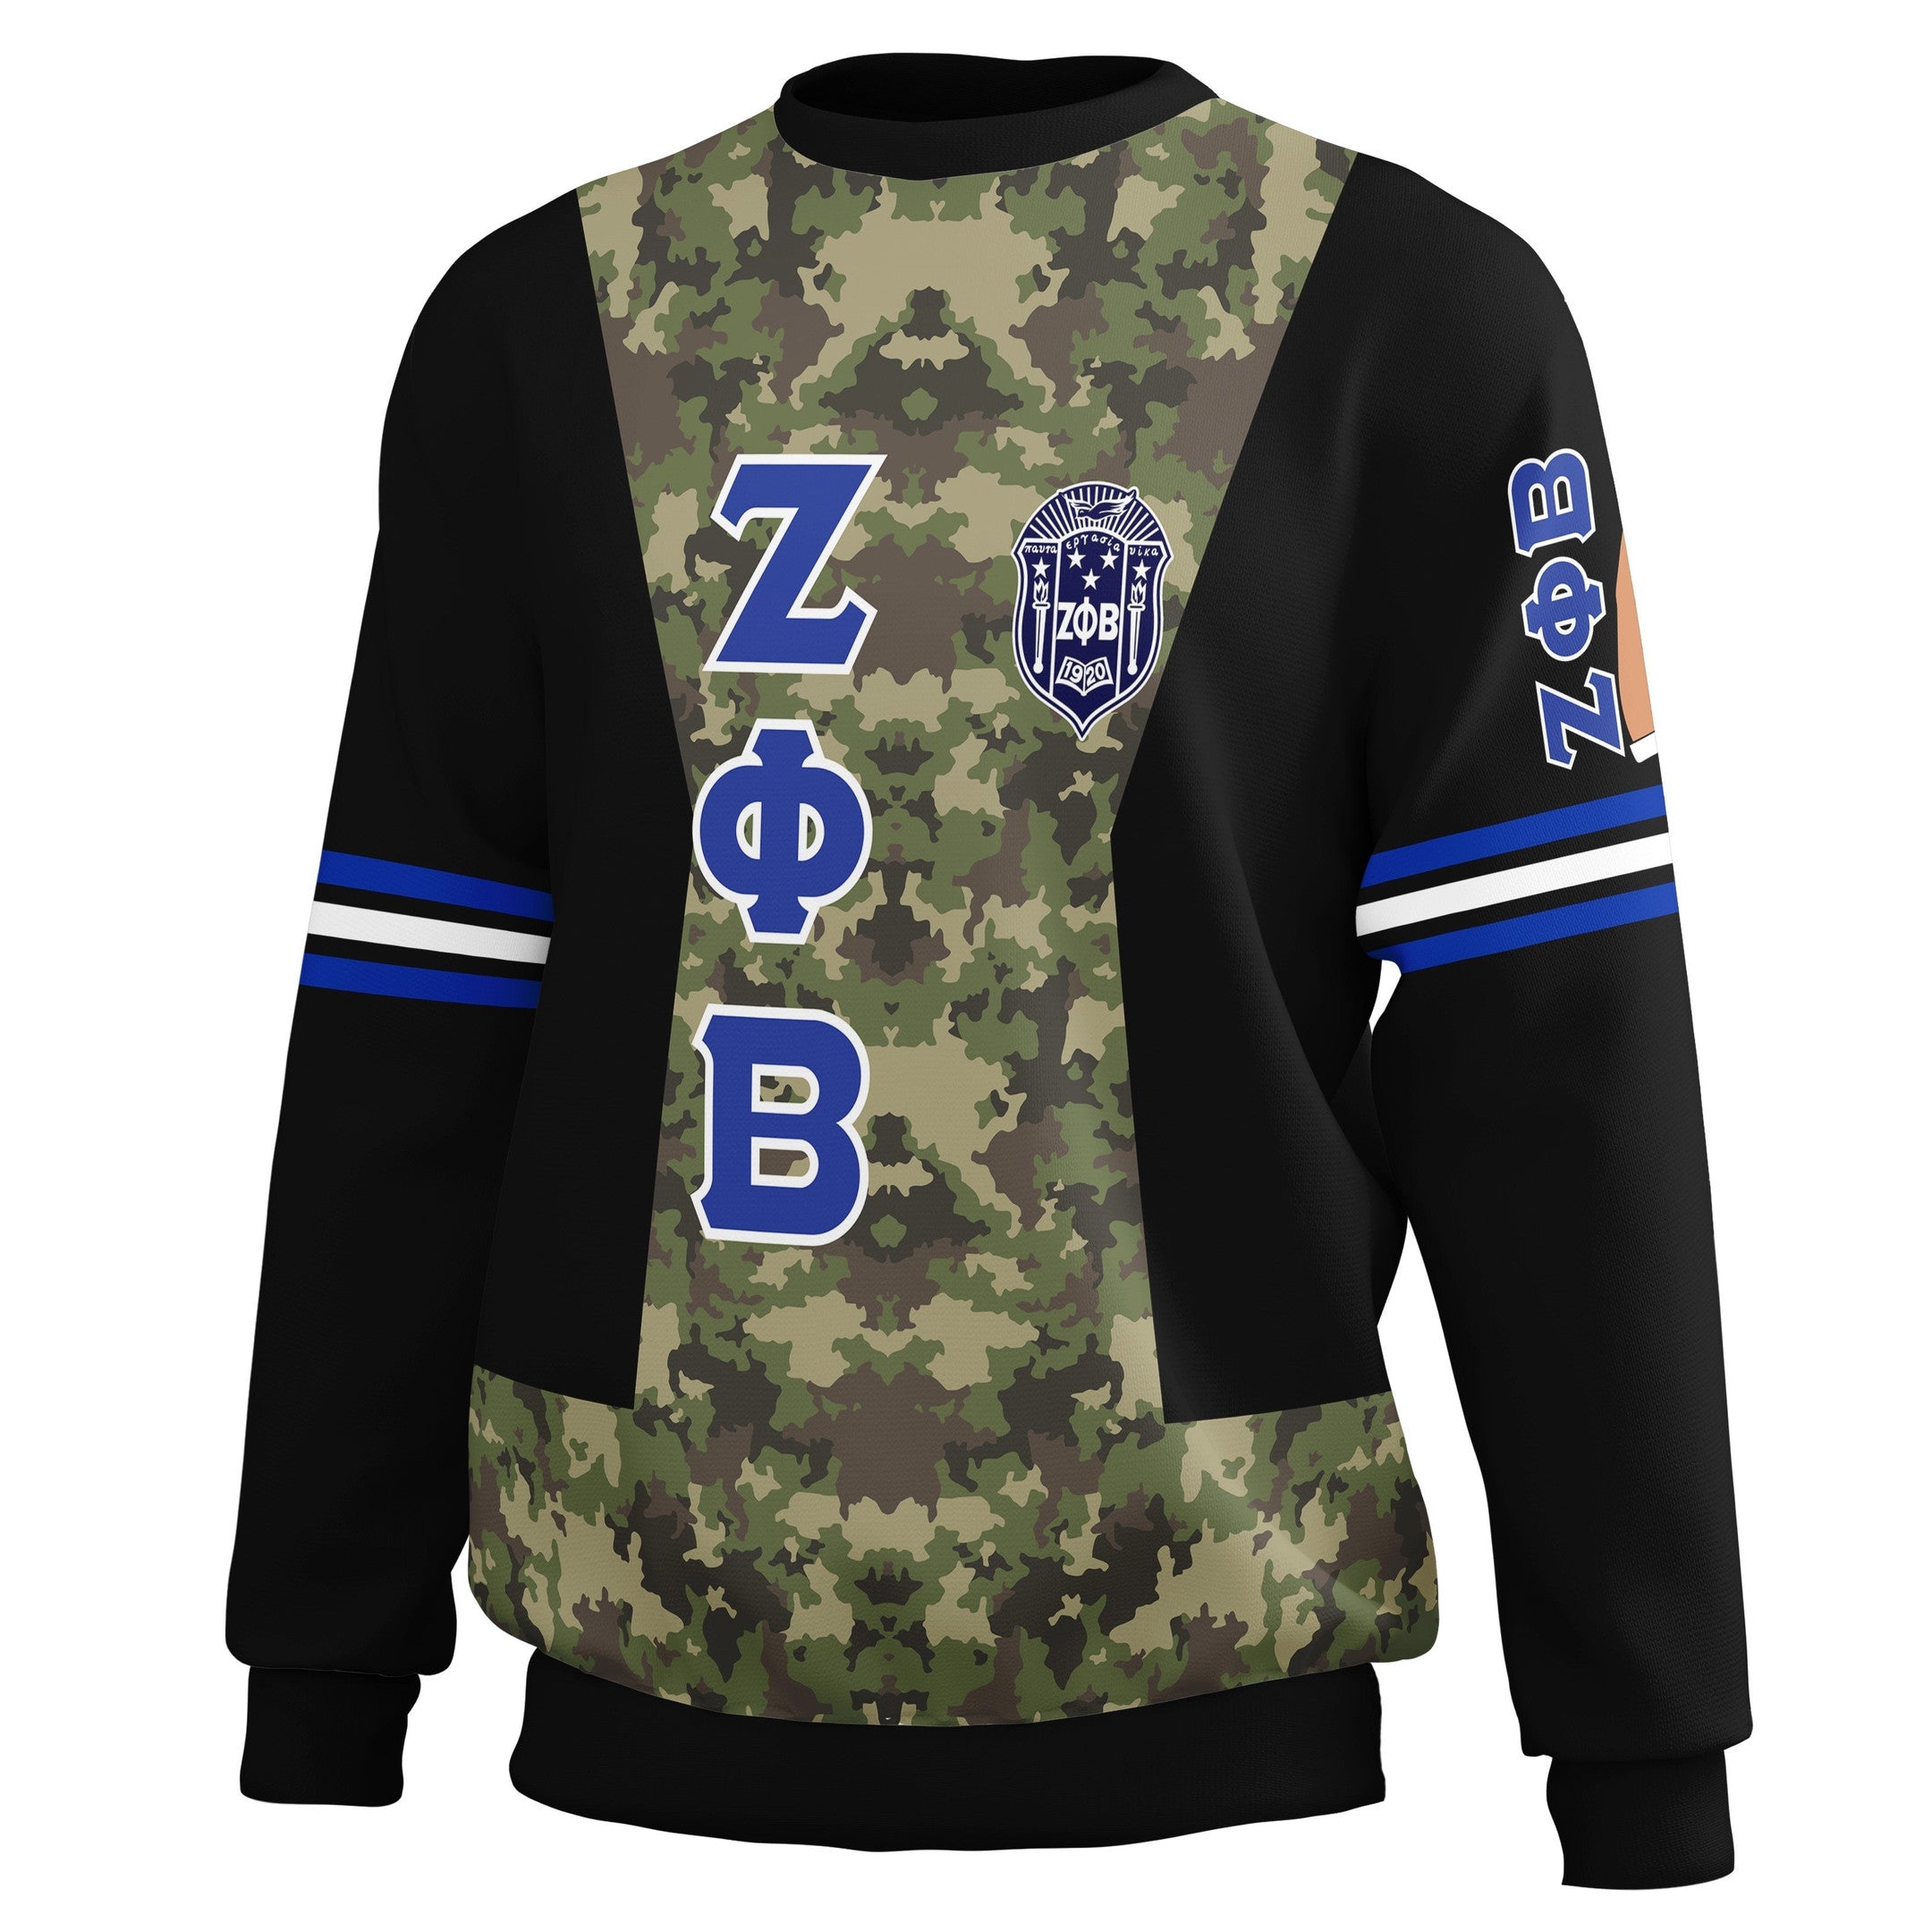 Sorority Sweatshirt - Zeta Phi Beta Sorority Camouflage Sweatshirt